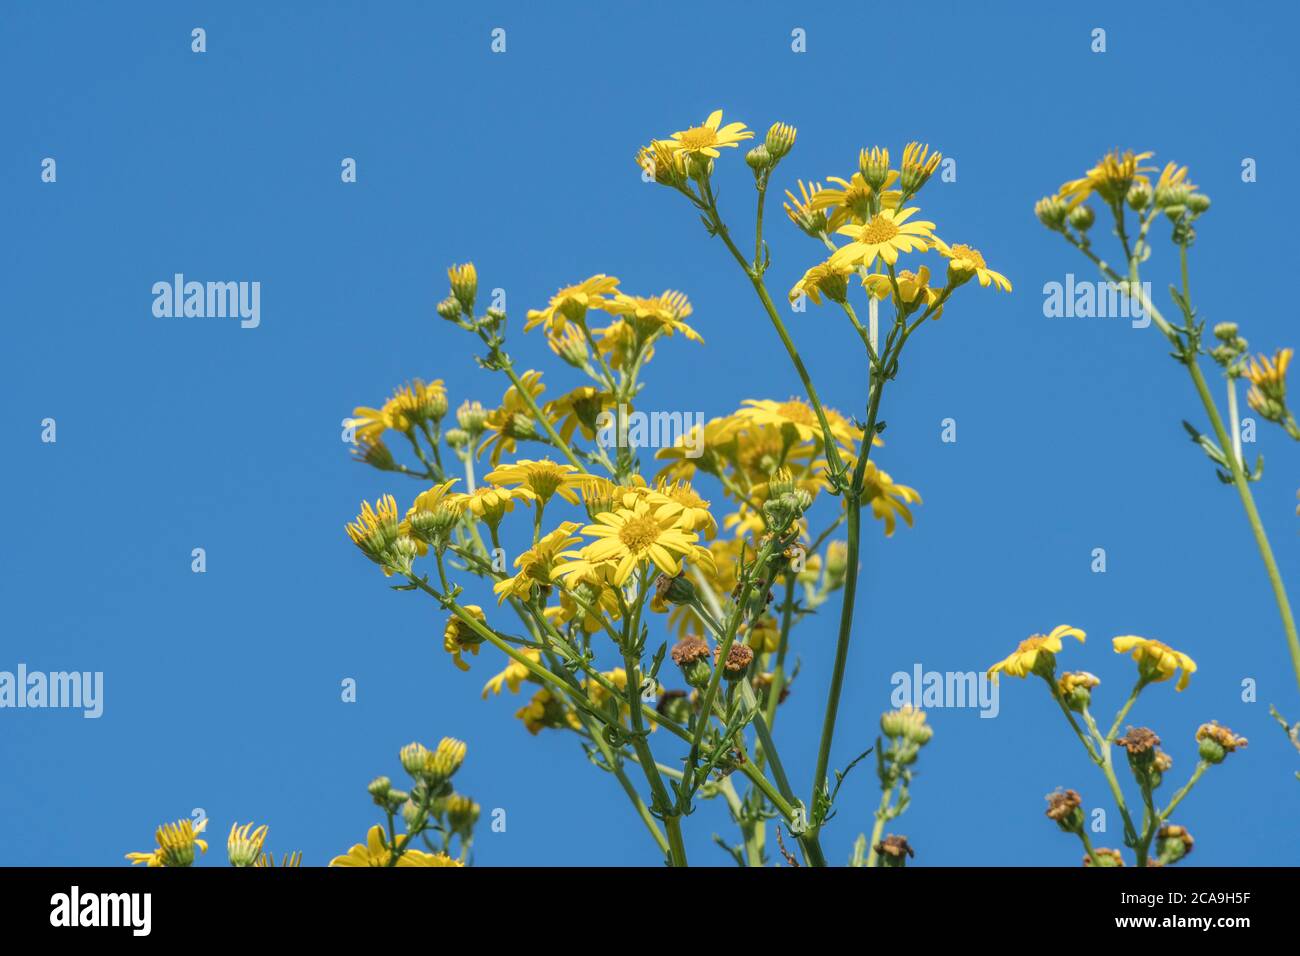 Blauer Himmel und gelbe Blüten der Gemeinen Ragwort / jacobaea vulgaris syn Senecio jacobaea der Asteraceae. Eine schädliche landwirtschaftliche Unkraut nach Unkraut Gesetz. Stockfoto